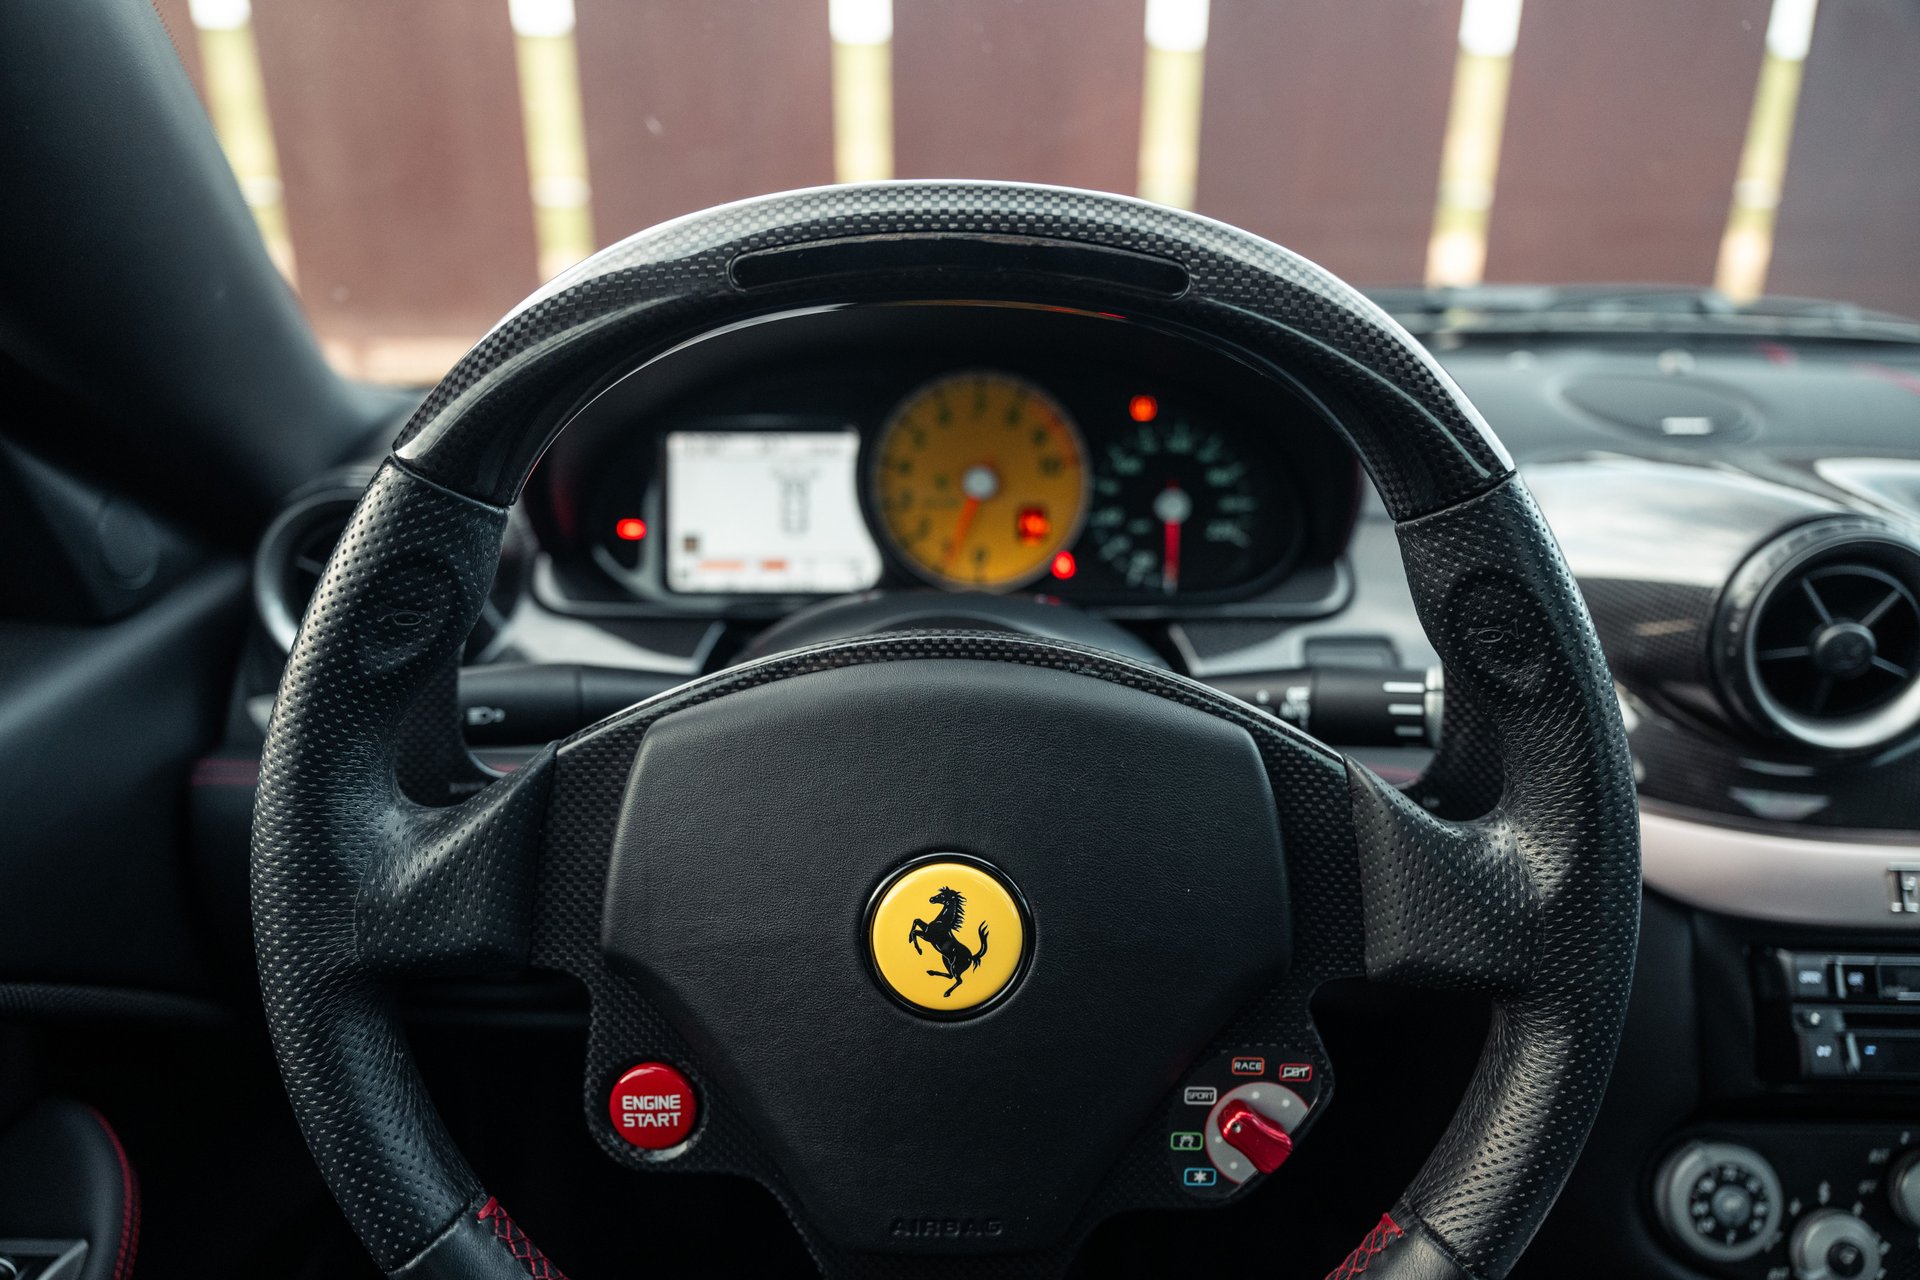 For Sale 2008 Ferrari 599 GTB Fiorano